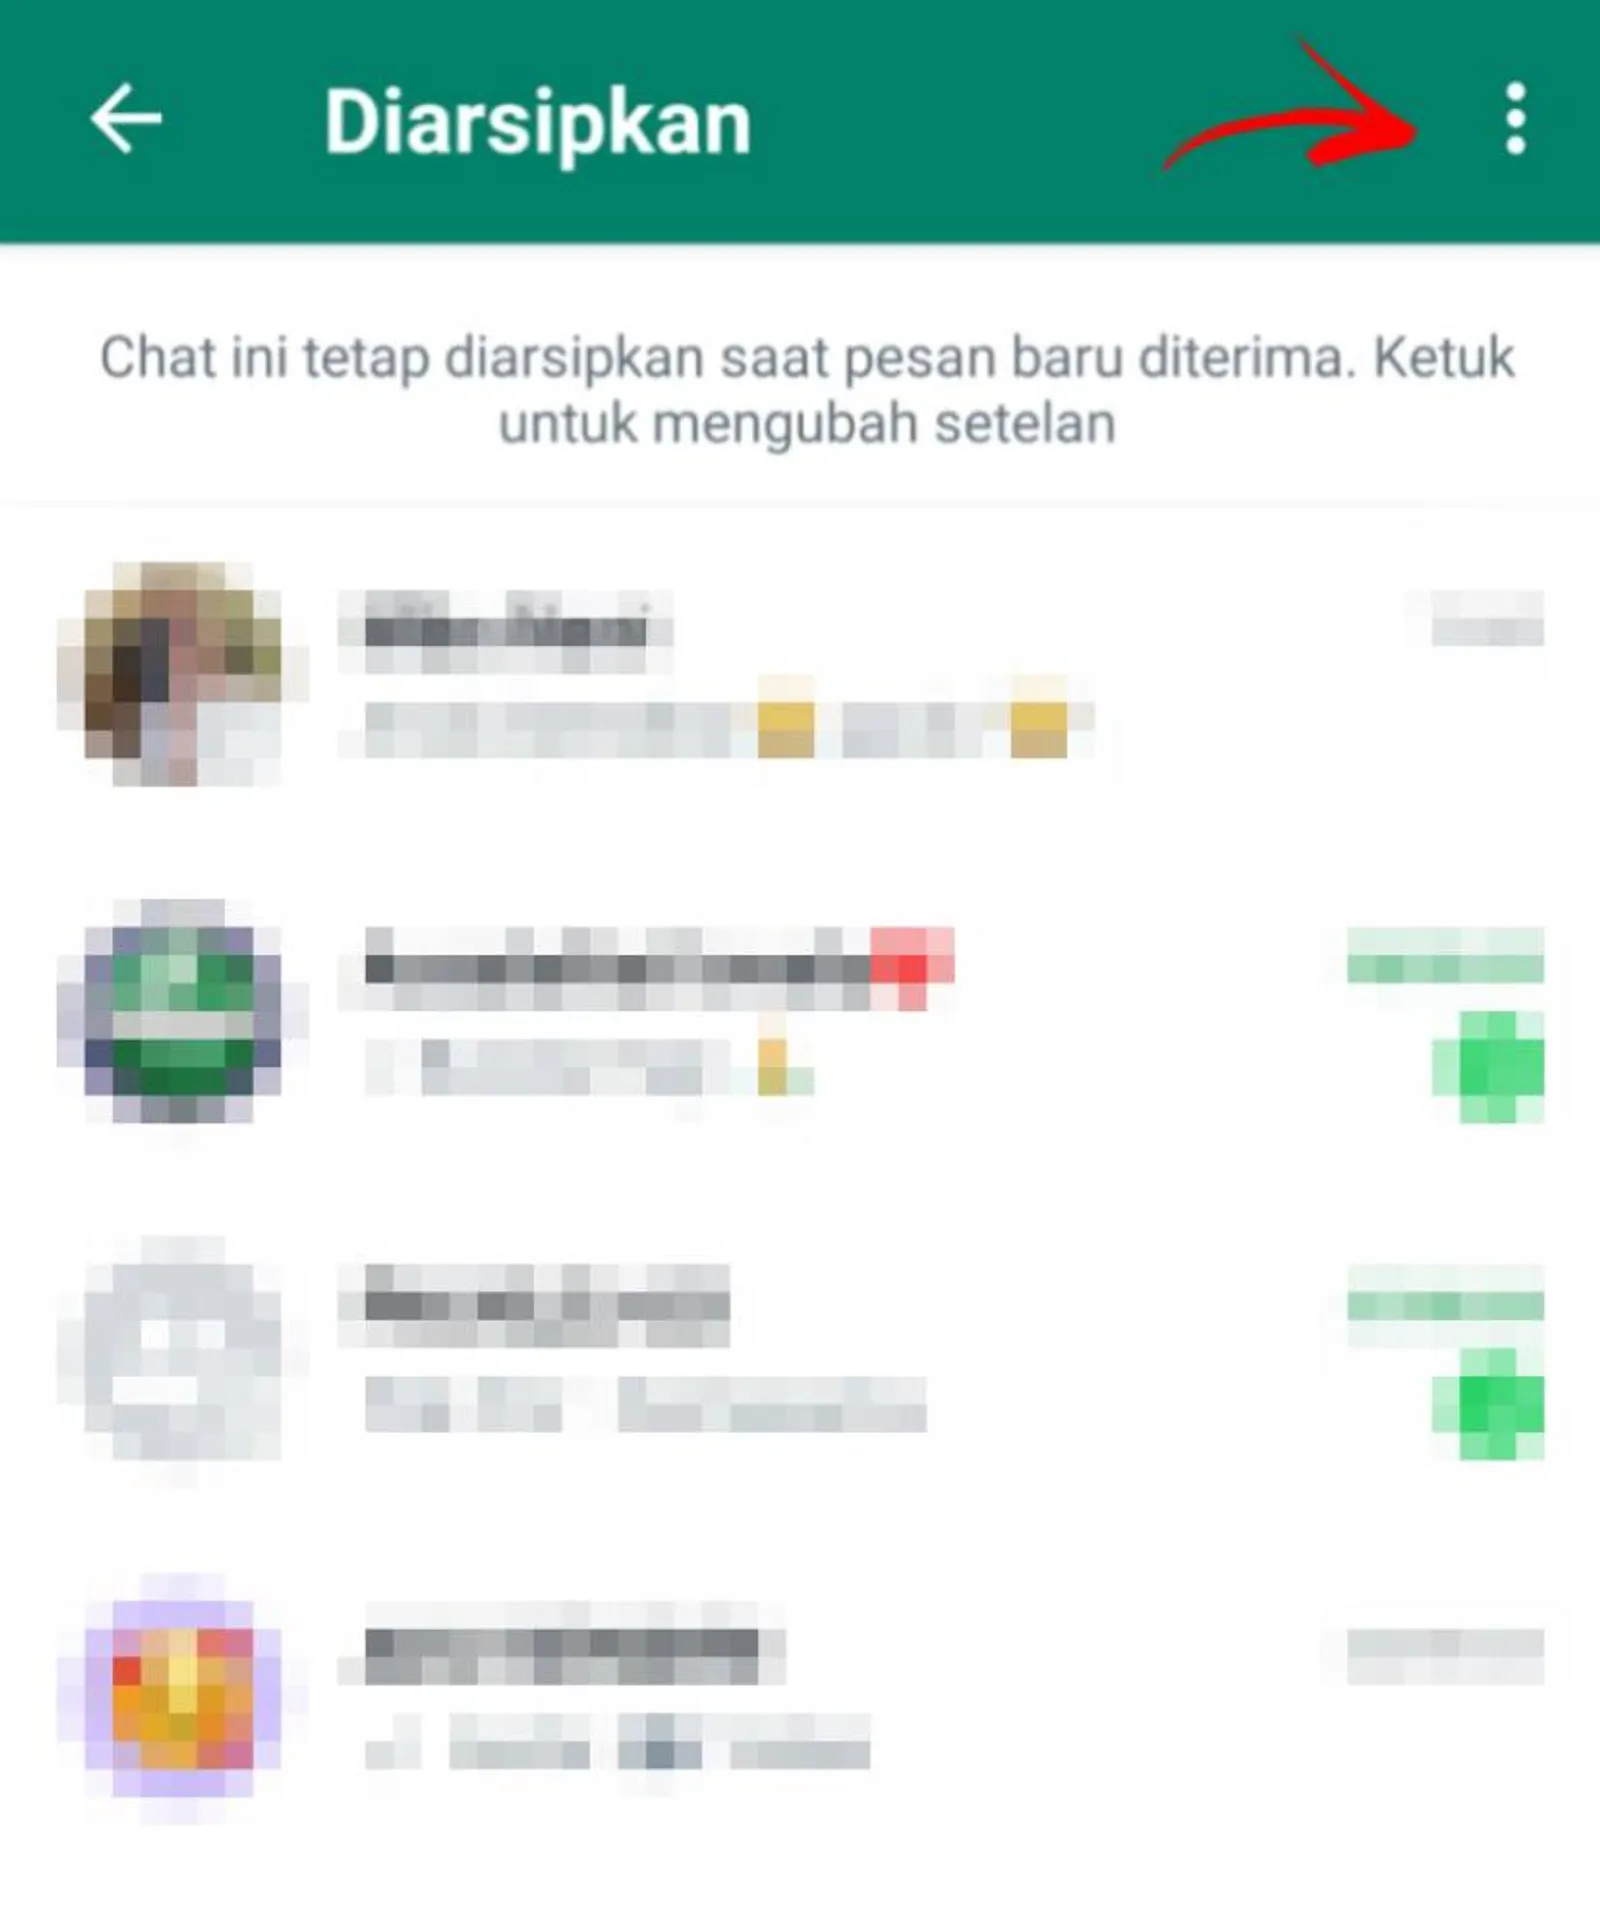 Cara Menonaktifkan WhatsApp Seseorang Tanpa Harus Memblokir